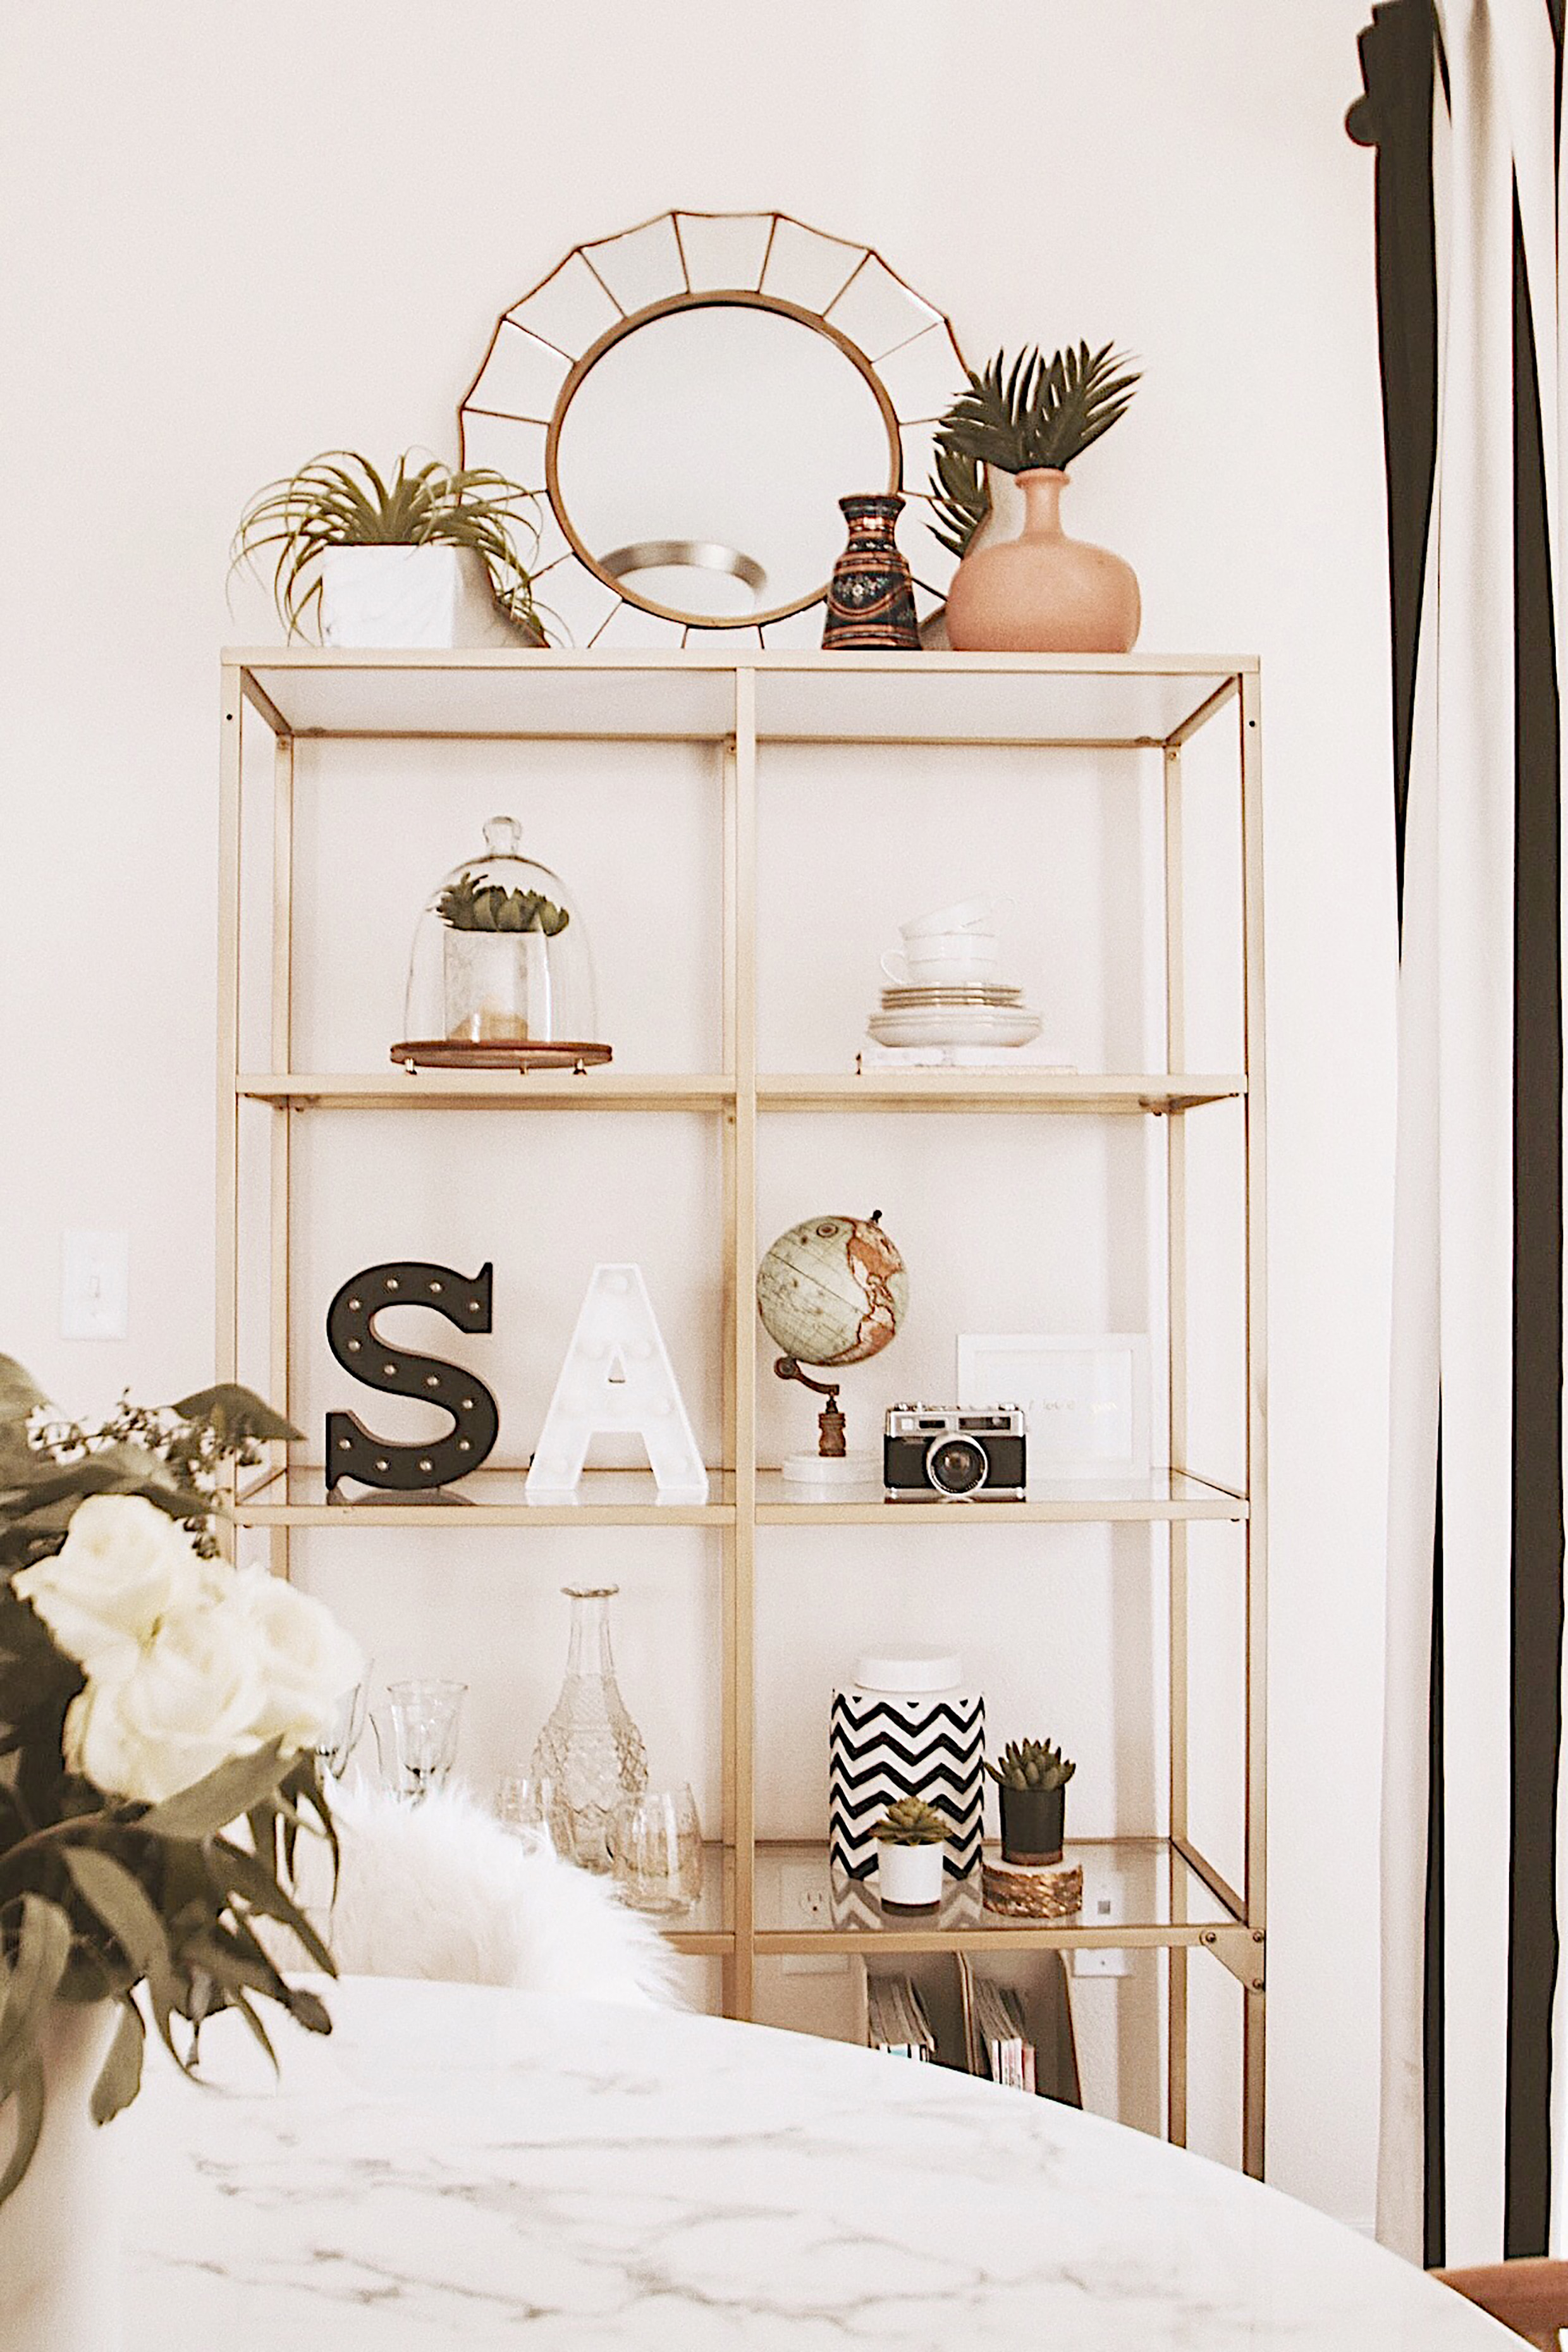 Alena Gidenko of modaprints.com shares her home decor and how she decorates a small apartment